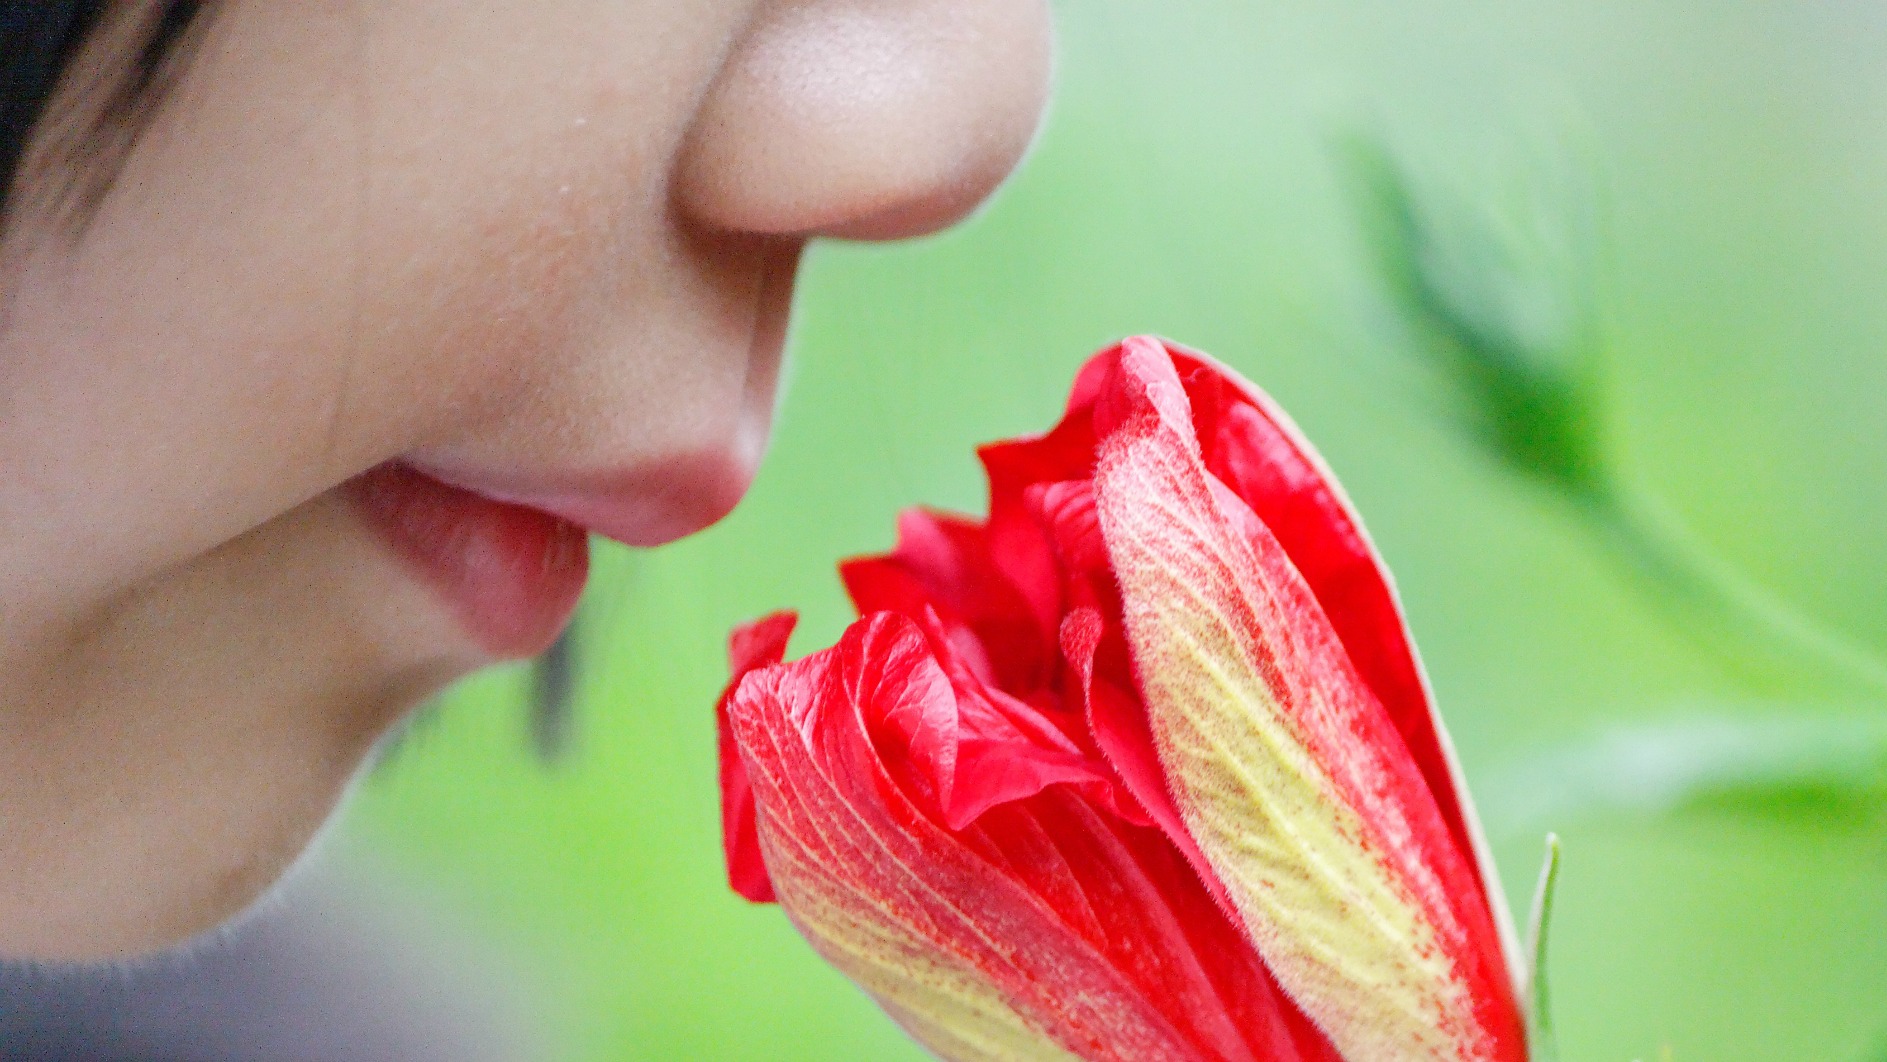 Redécouvrir le sens "ancestral et mystérieux" de l'odorat (Photo: Dennis Wong/Flickr/CC BY 2.0)